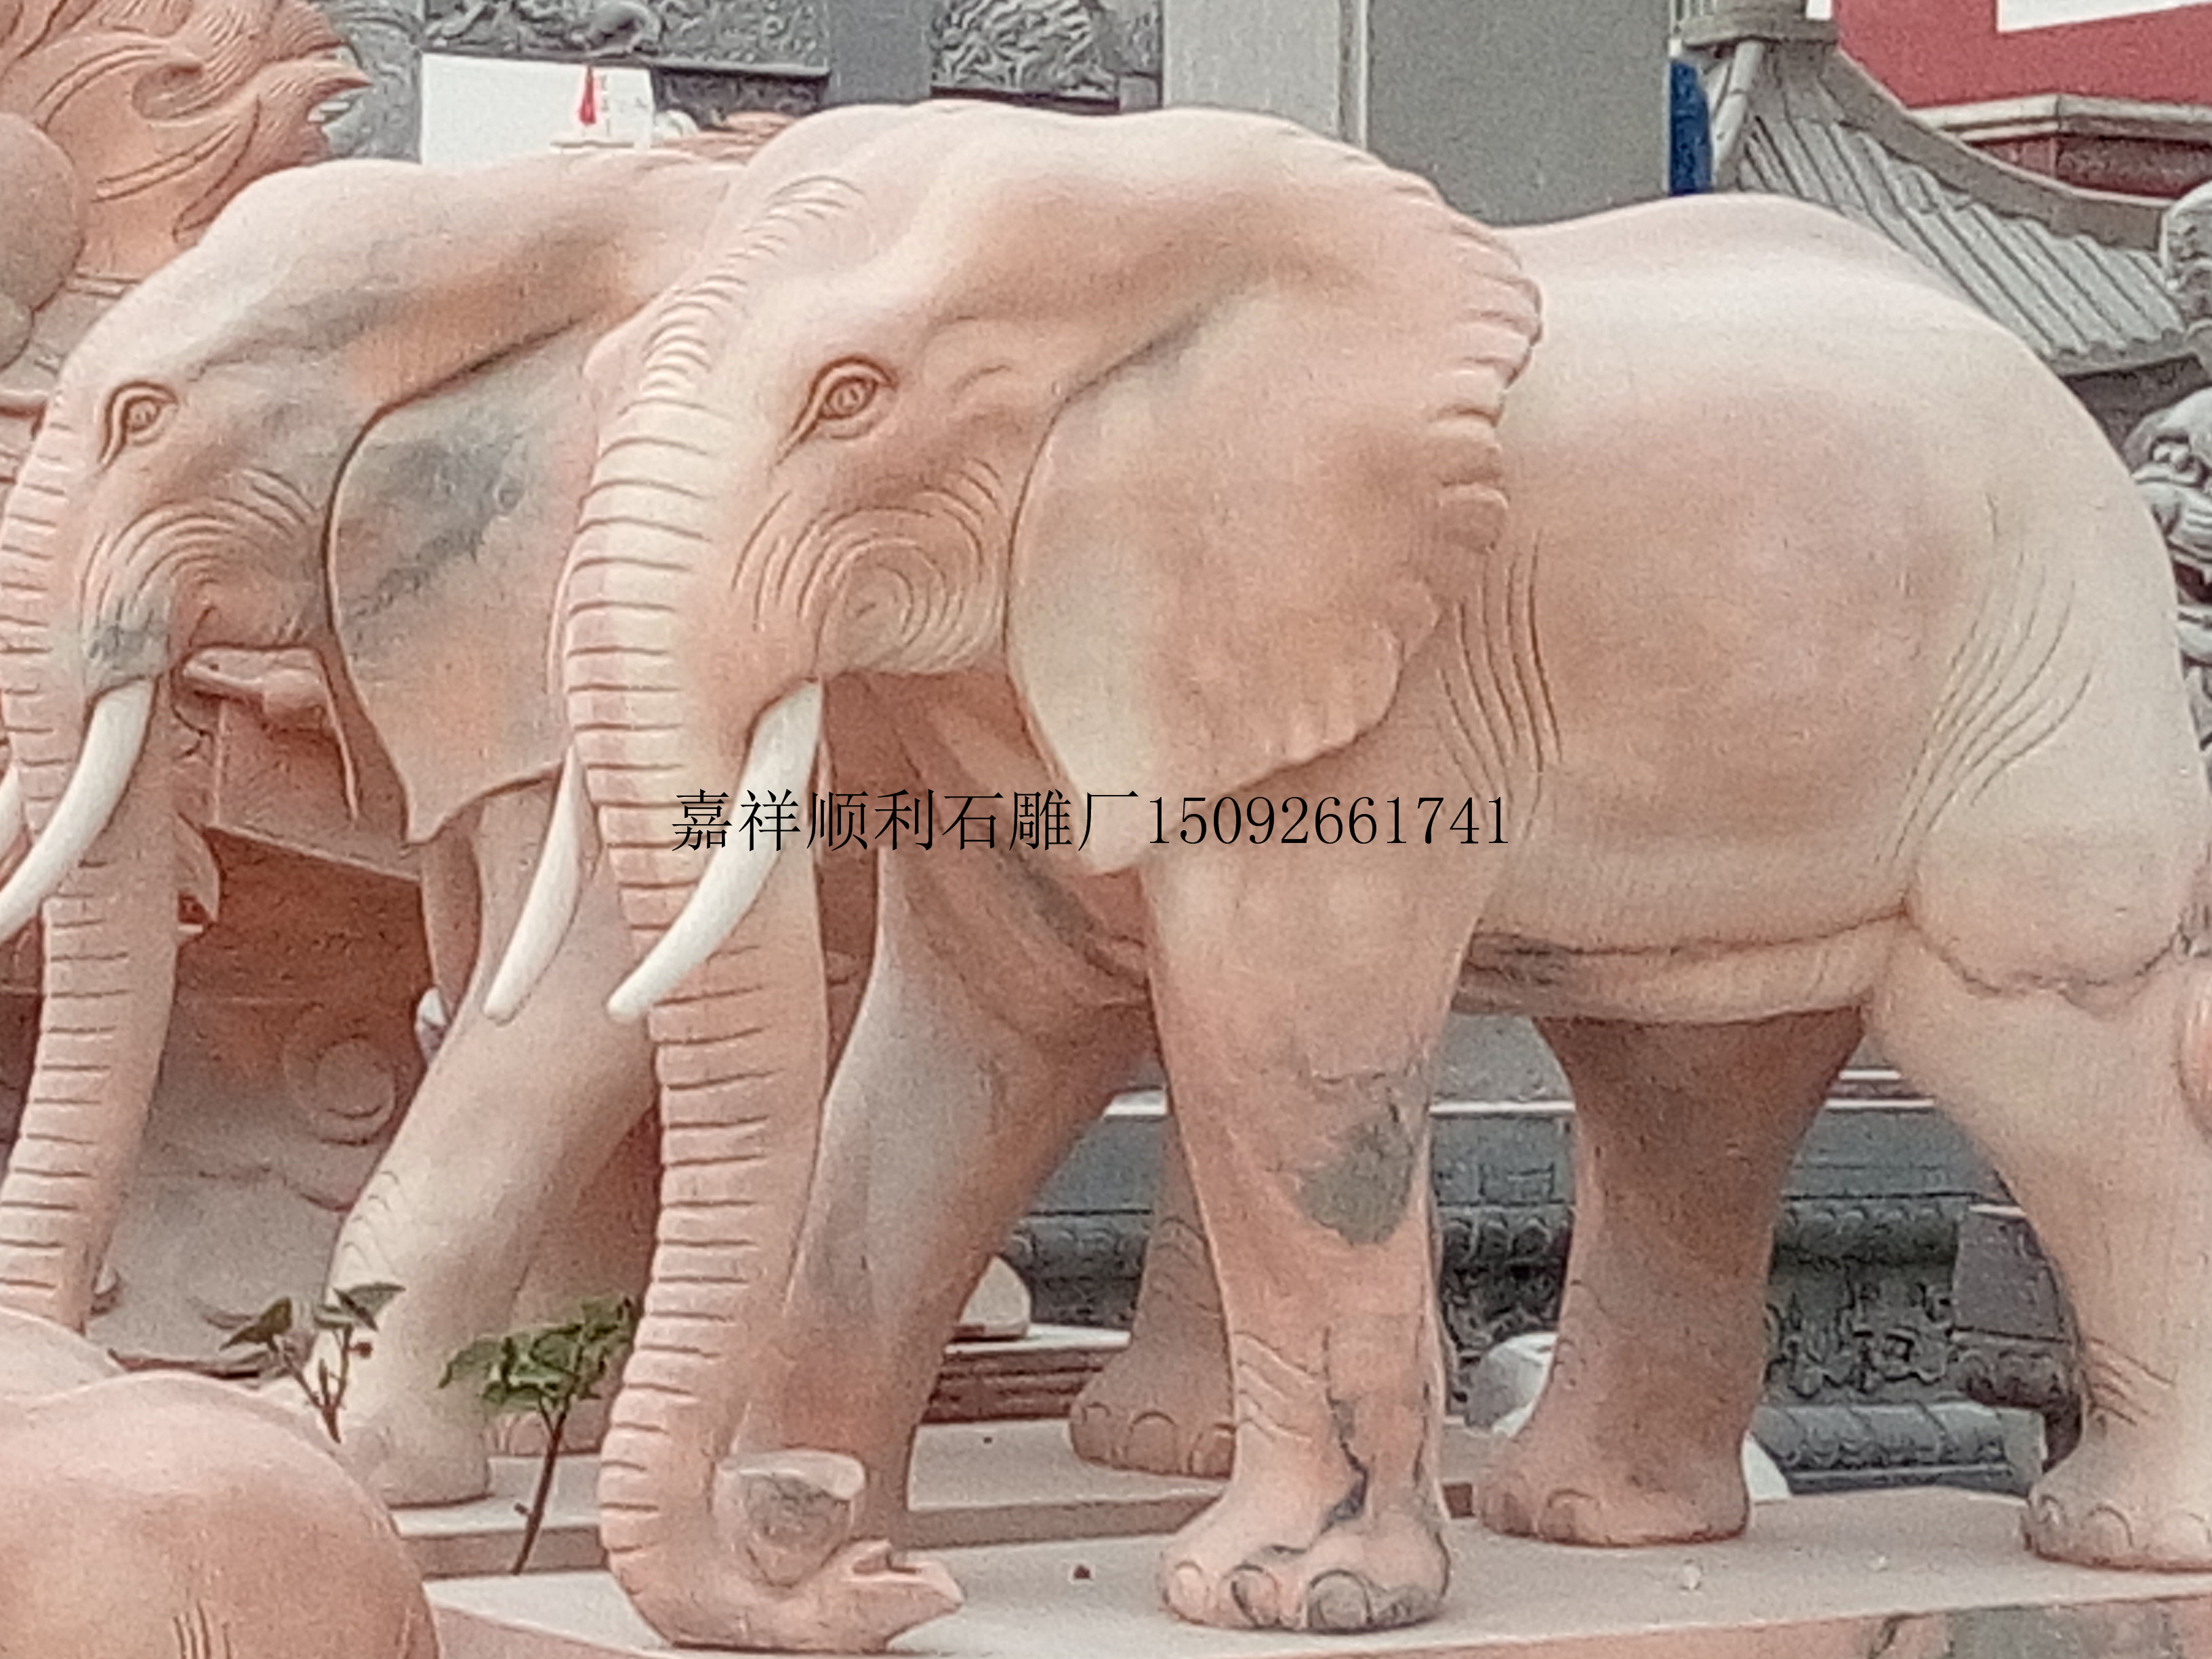 石雕大象晚霞红大象佛教石象石雕象花岗岩大象石雕大象生产厂家青石大象大象图片图片